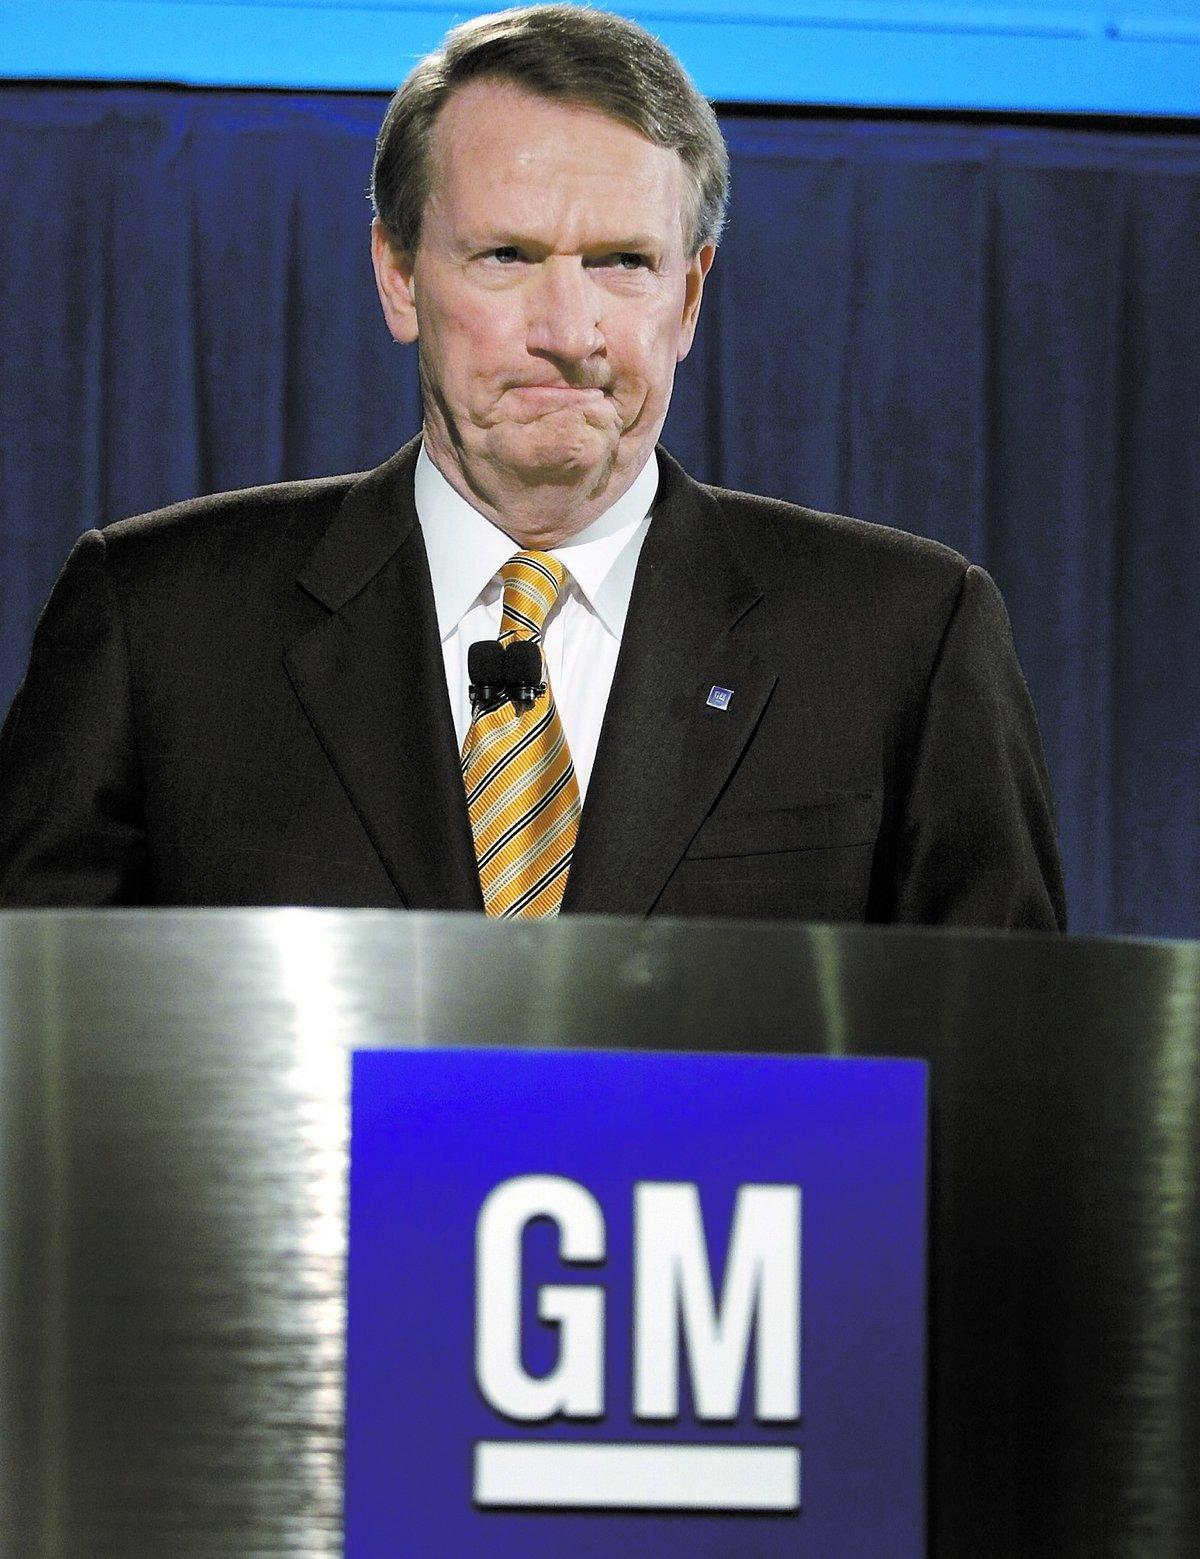 Krisplan i natt General Motors vd Rick Wagoner, 56, presenterade i natt krisplanen för GM och Saab. ”GM hoppas att nå en överenskommelse med den svenska regeringen” sa han. I andra fall väntar en rekonstruktion av Saab, vilket innebär att amerikanarna tar sin hand från svenska Saab som då måste stå på egna ben.